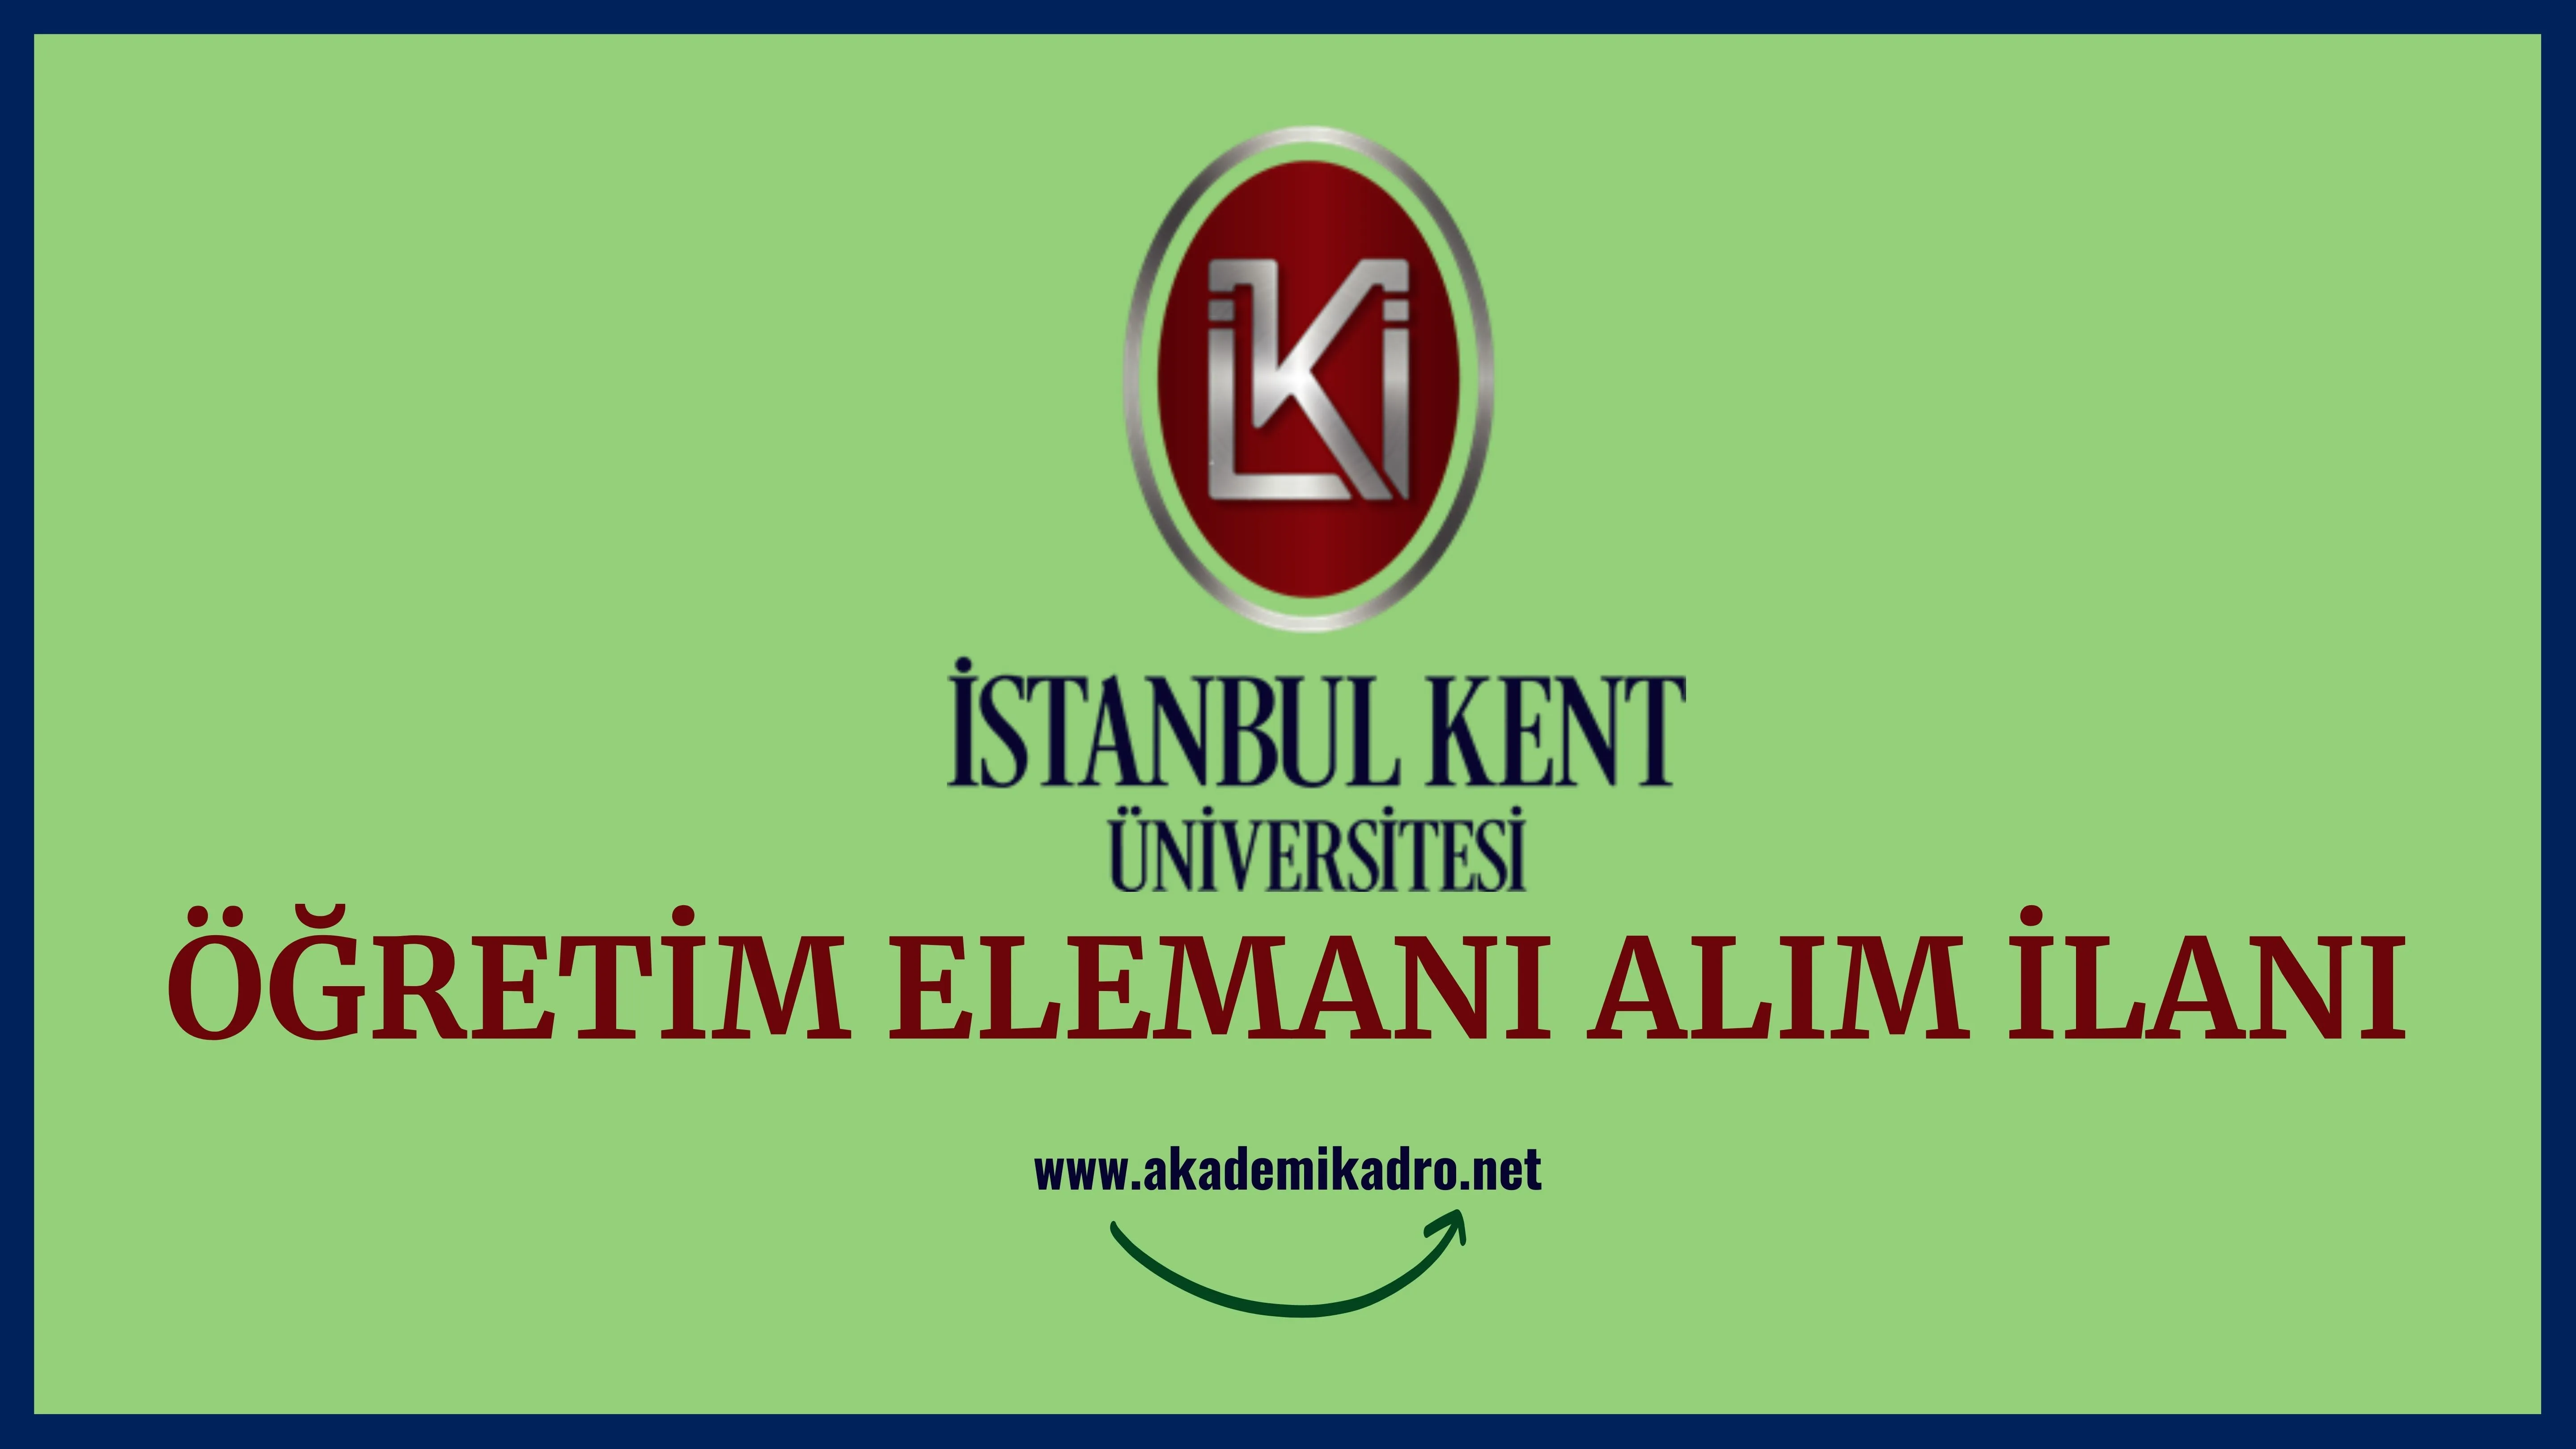 İstanbul Kent Üniversitesi Araştırma görevlisi, Öğretim görevlisi ve birçok alandan Öğretim üyesi olmak üzere 16 Öğretim elemanı alacak.